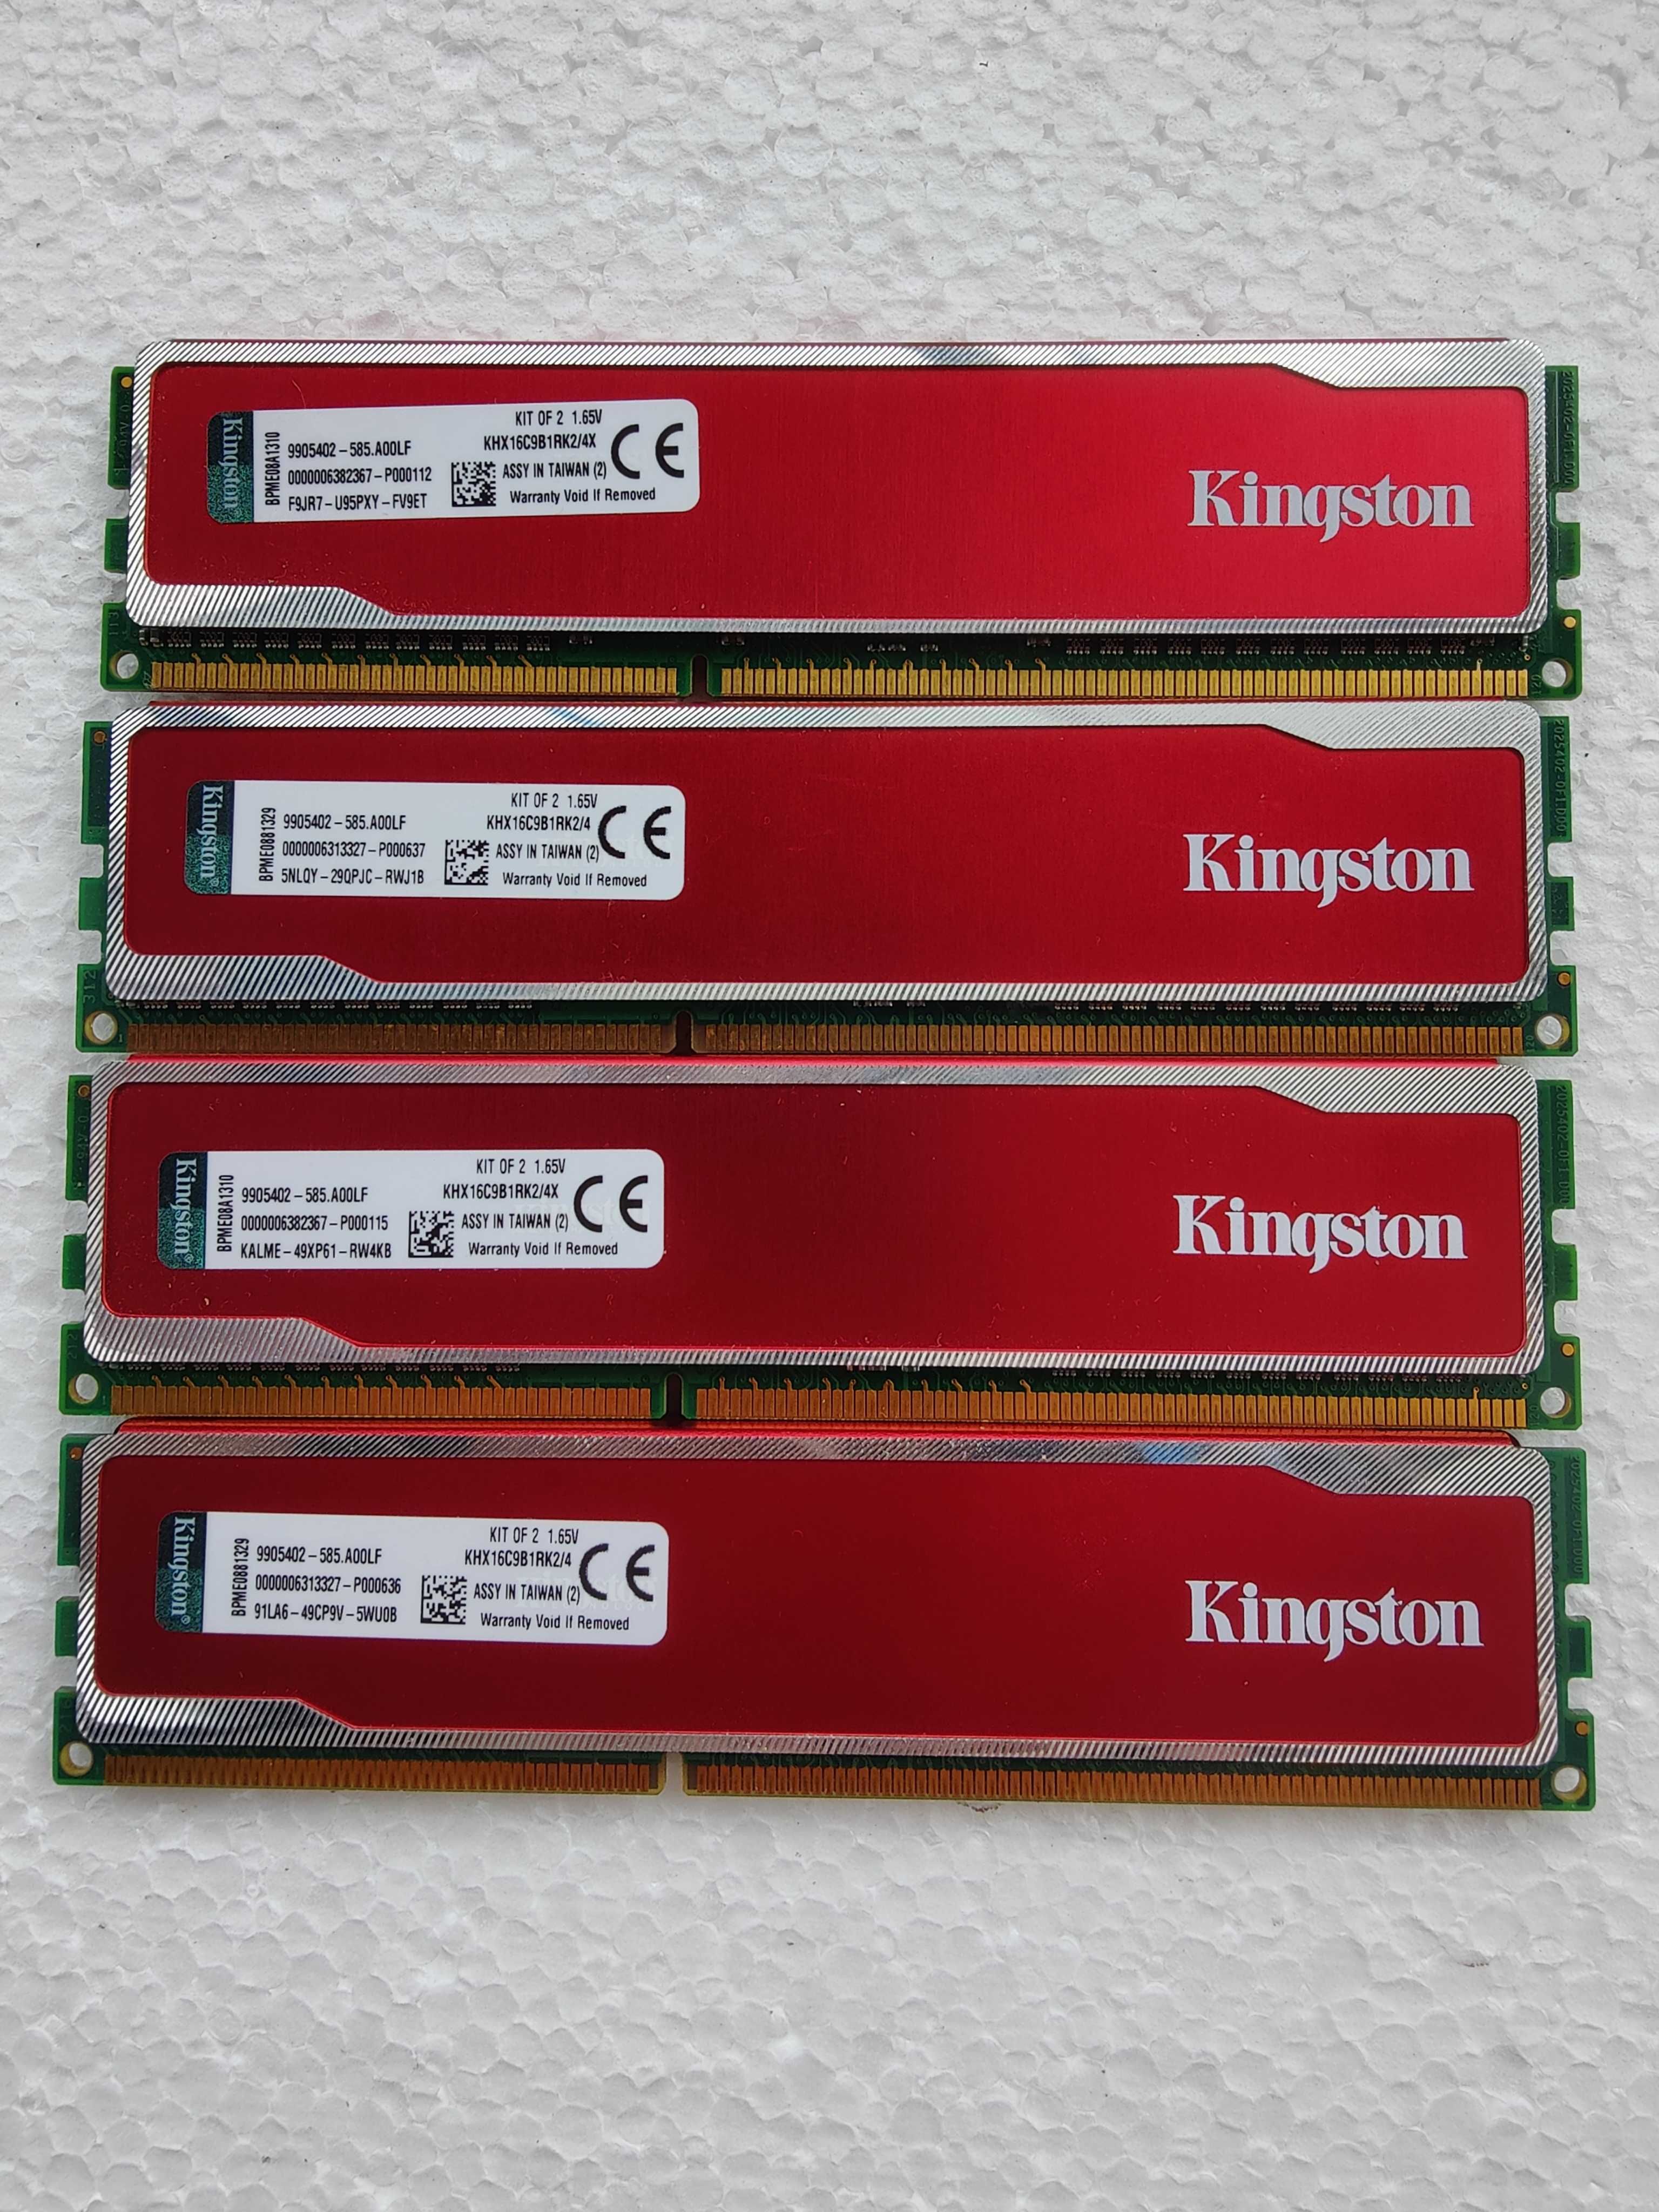 Kit Memorii ram Kingston HyperX red KHX16C9B1RK, 4 bucati x 2 Gb ddr3